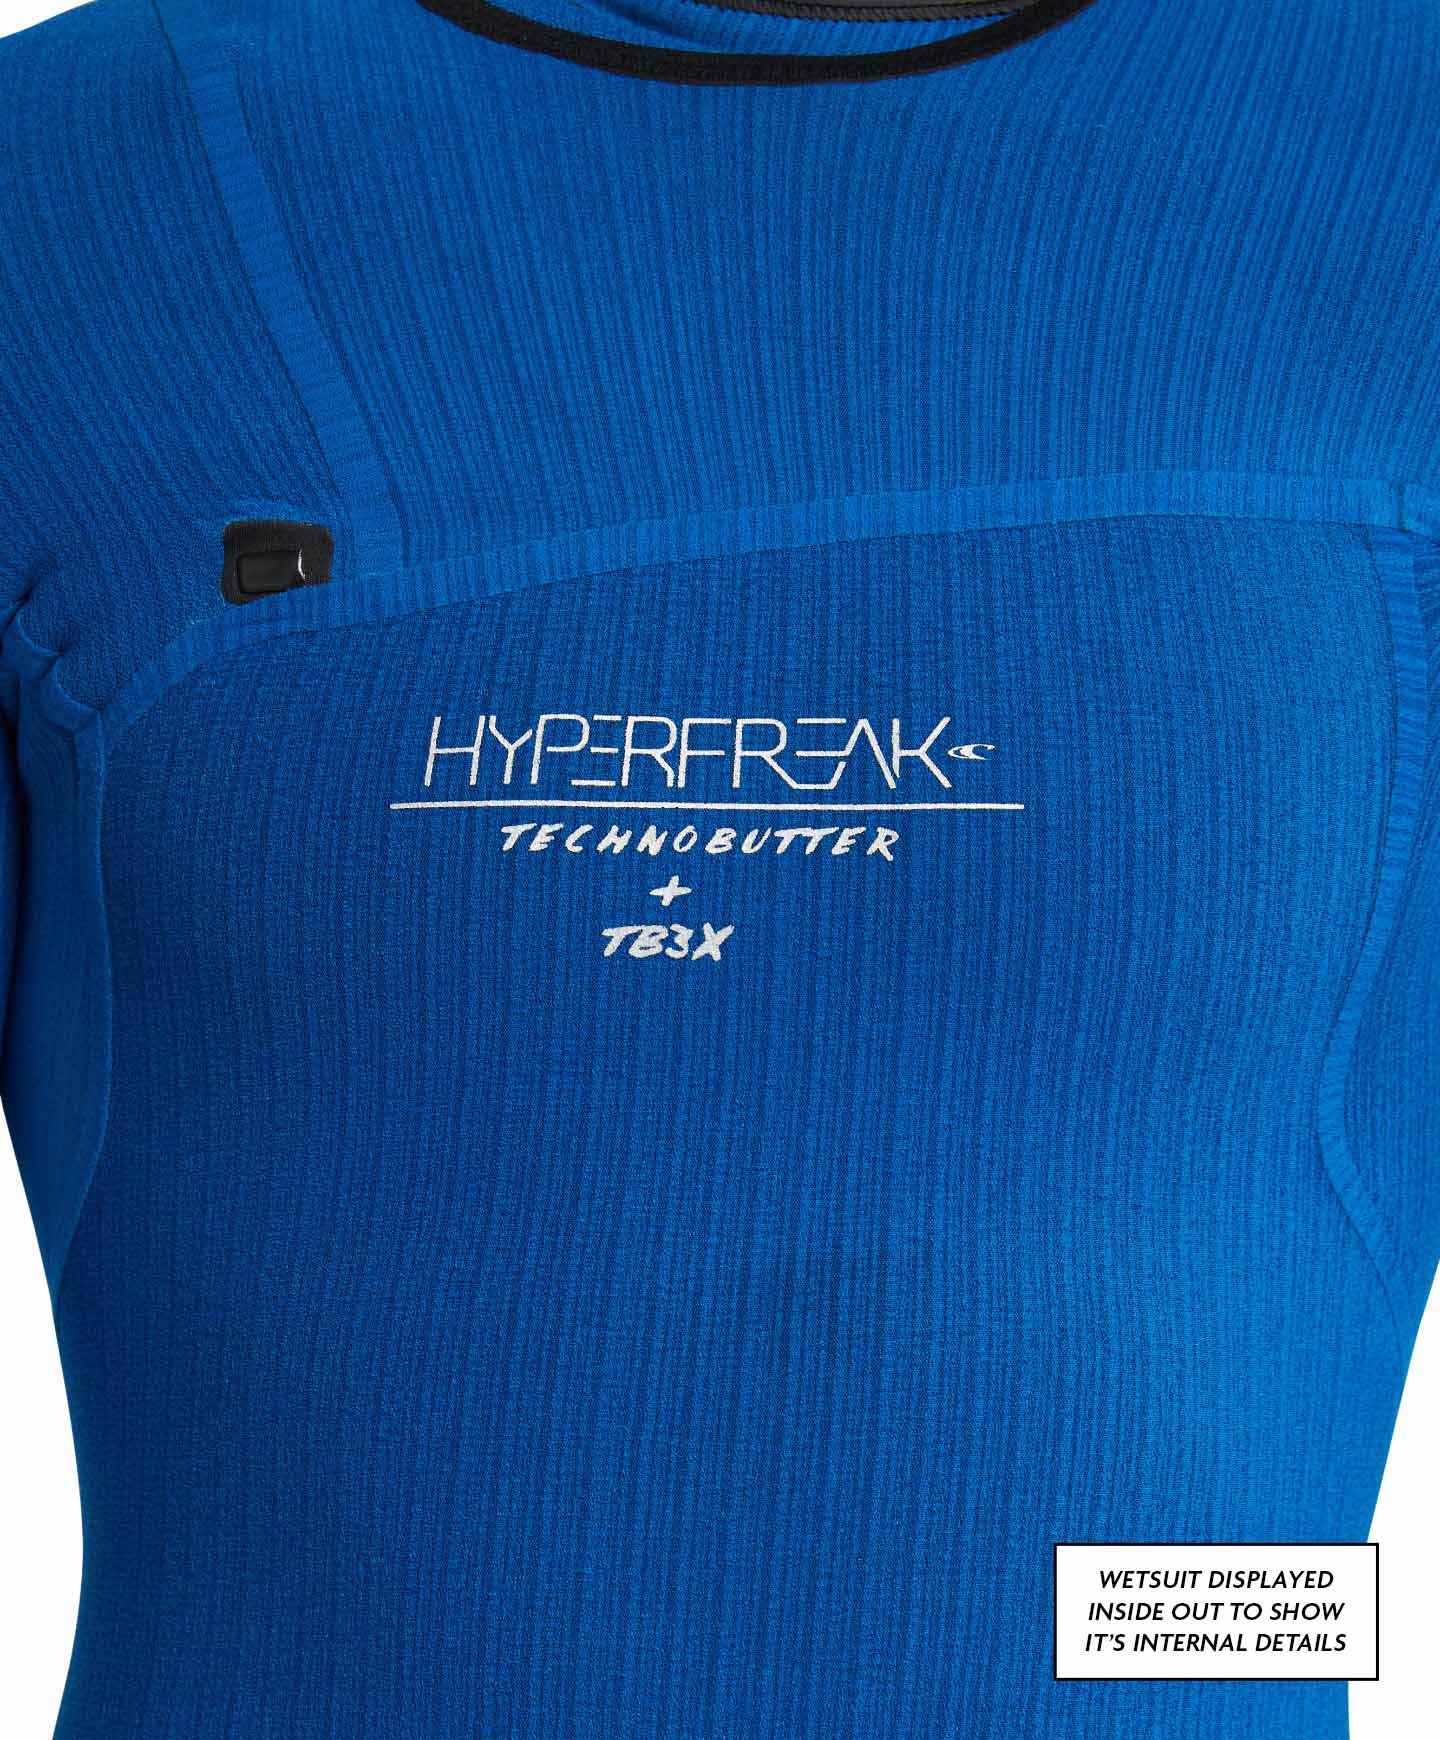 HyperFreak 4/3+ Steamer Chest Zip Wetsuit - Navy